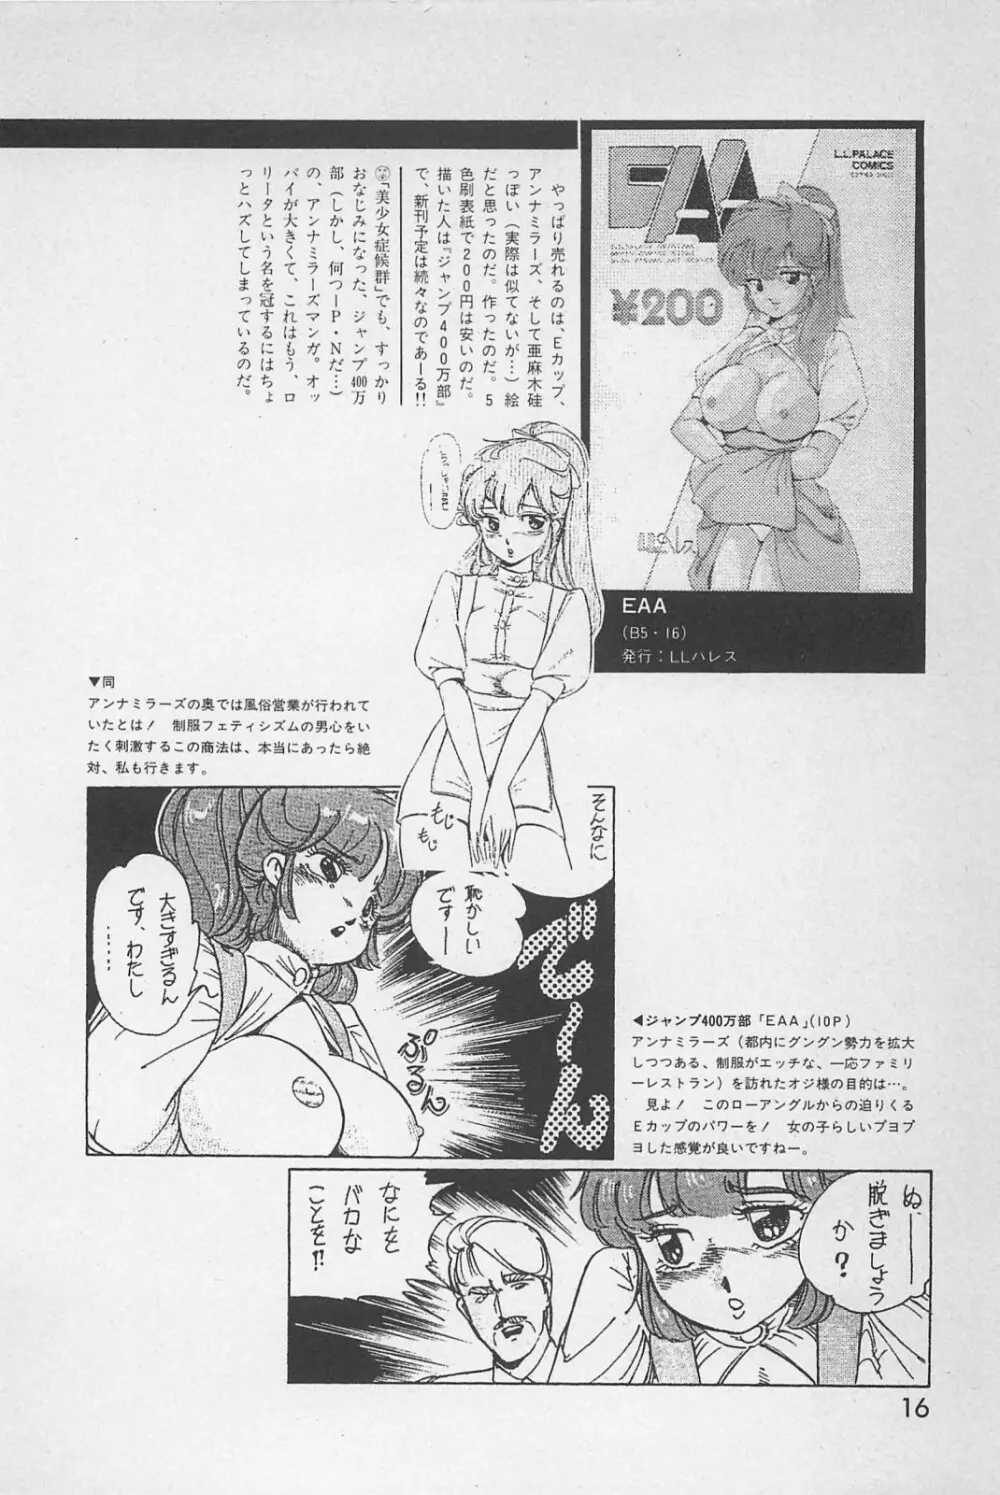 美少女症候群 1985 18ページ